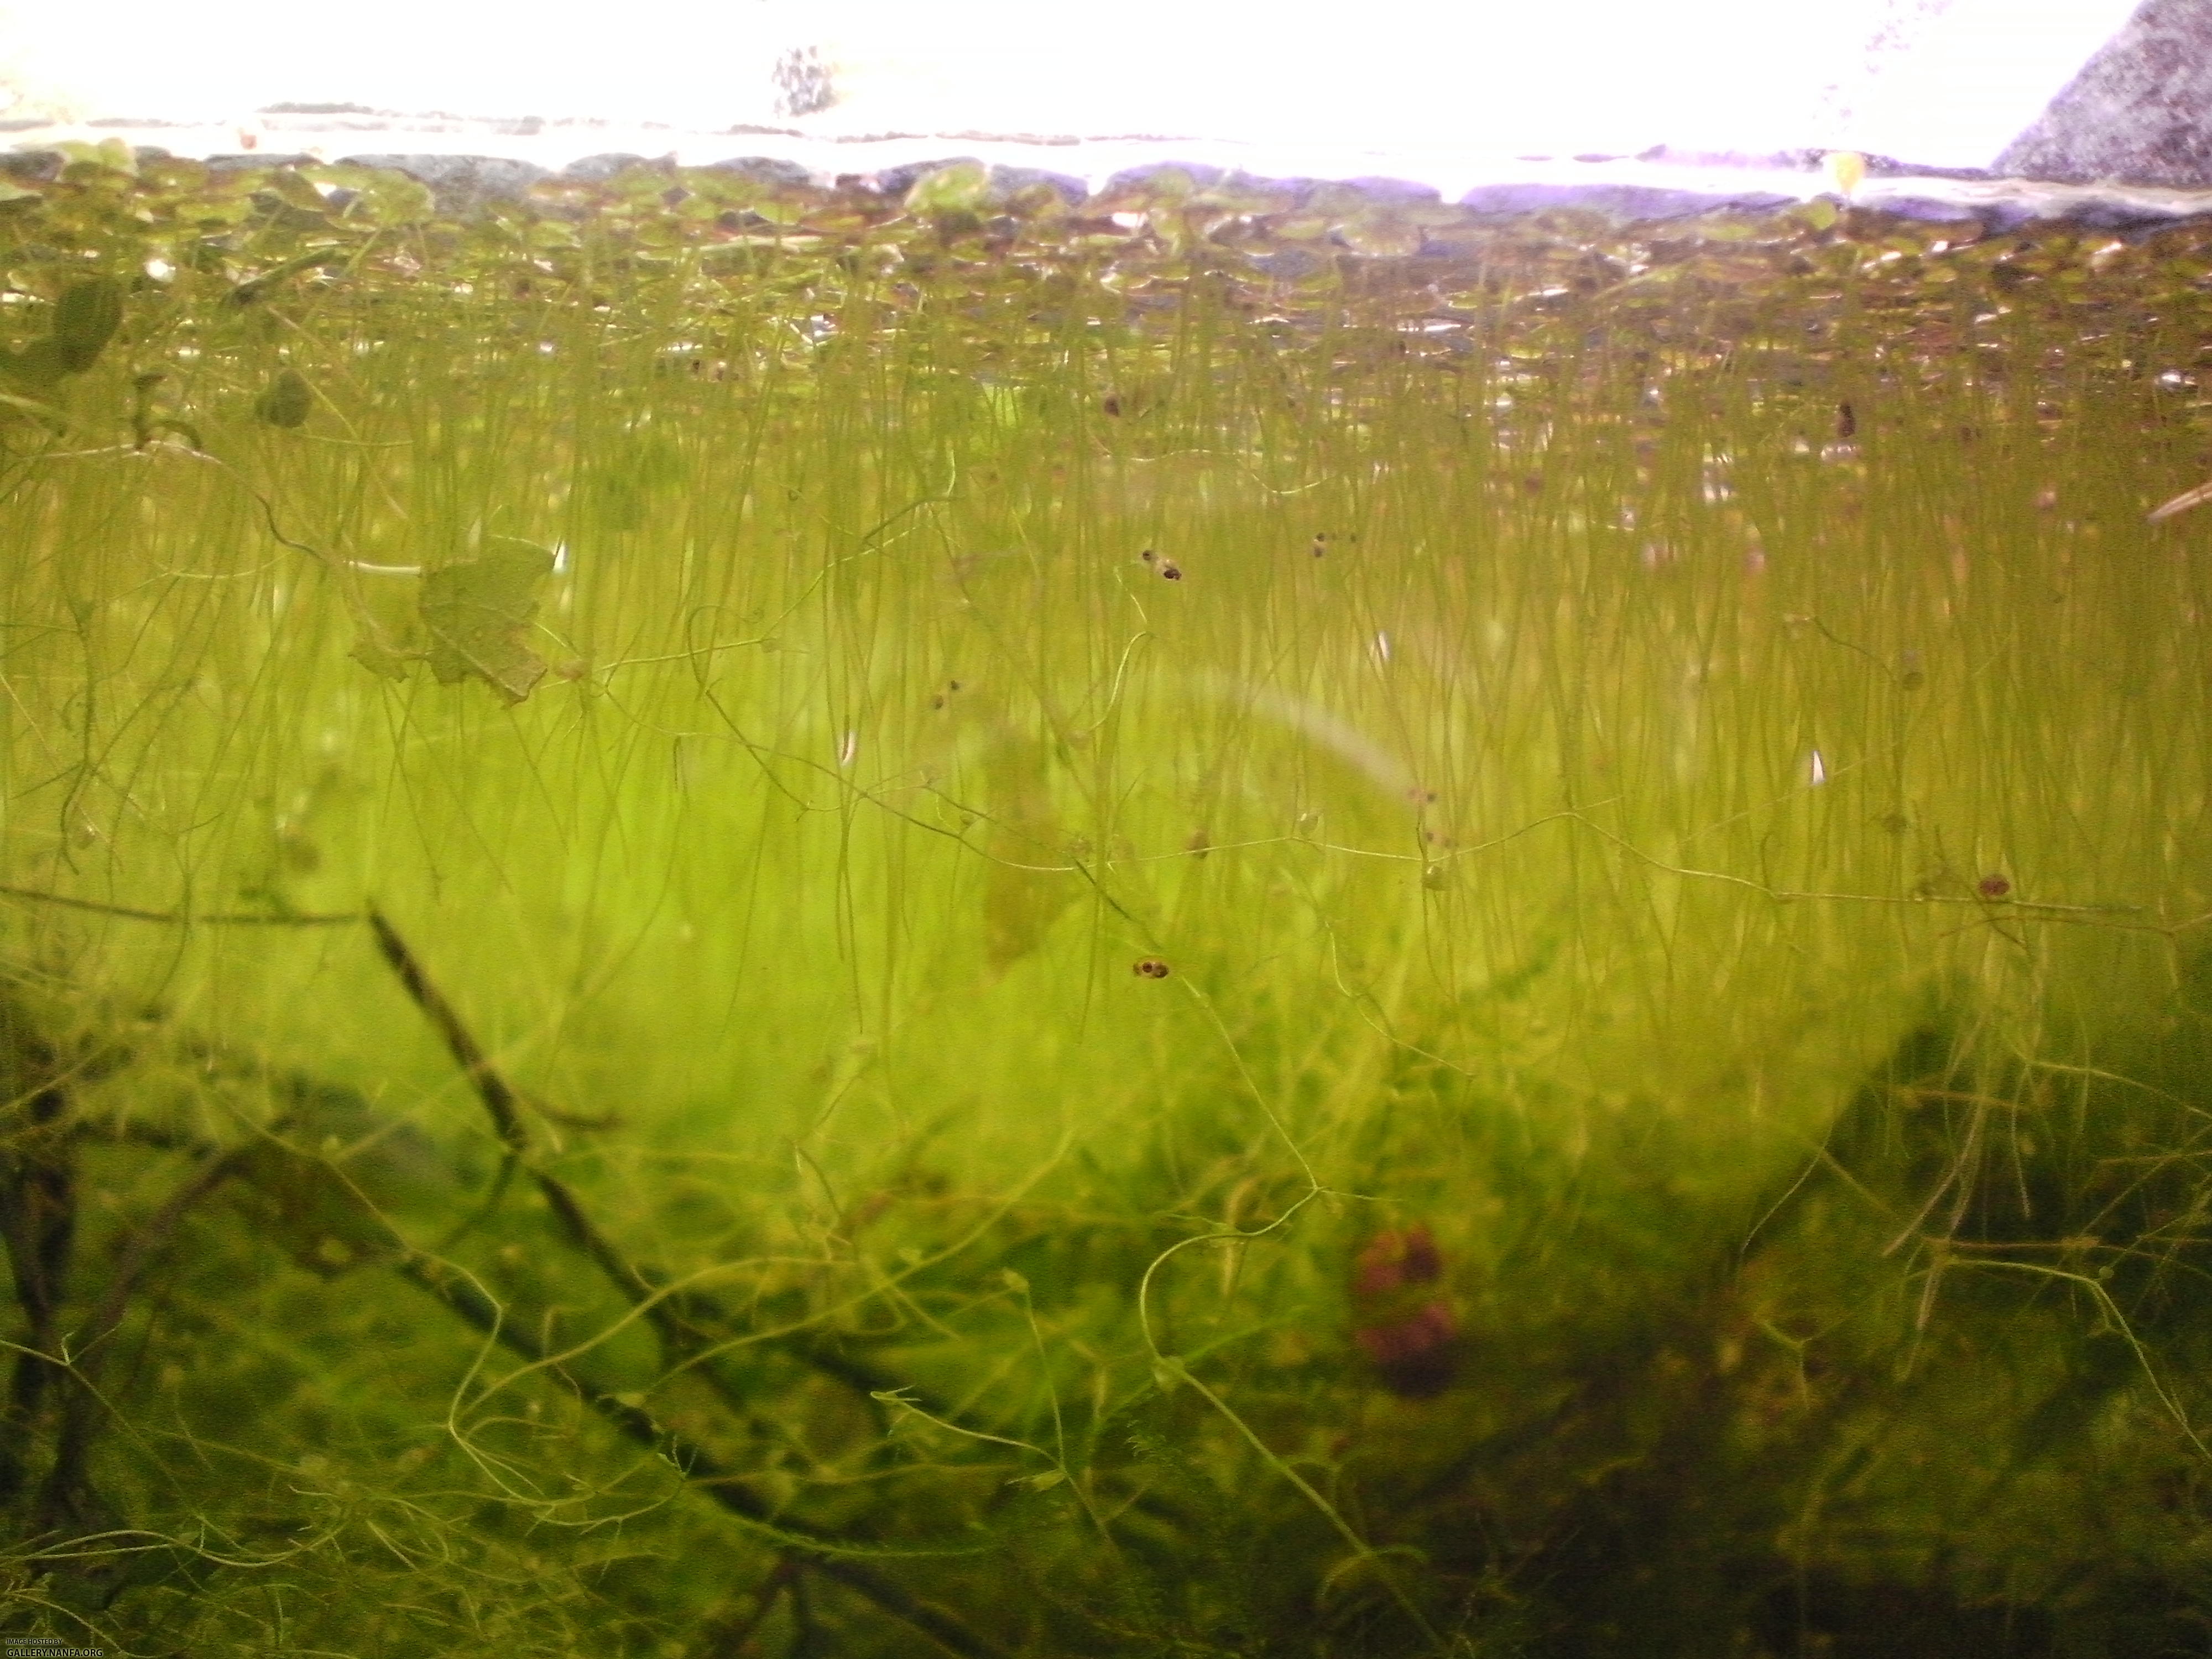 Elassoma gilberti fry in duckweed at surface of aquarium